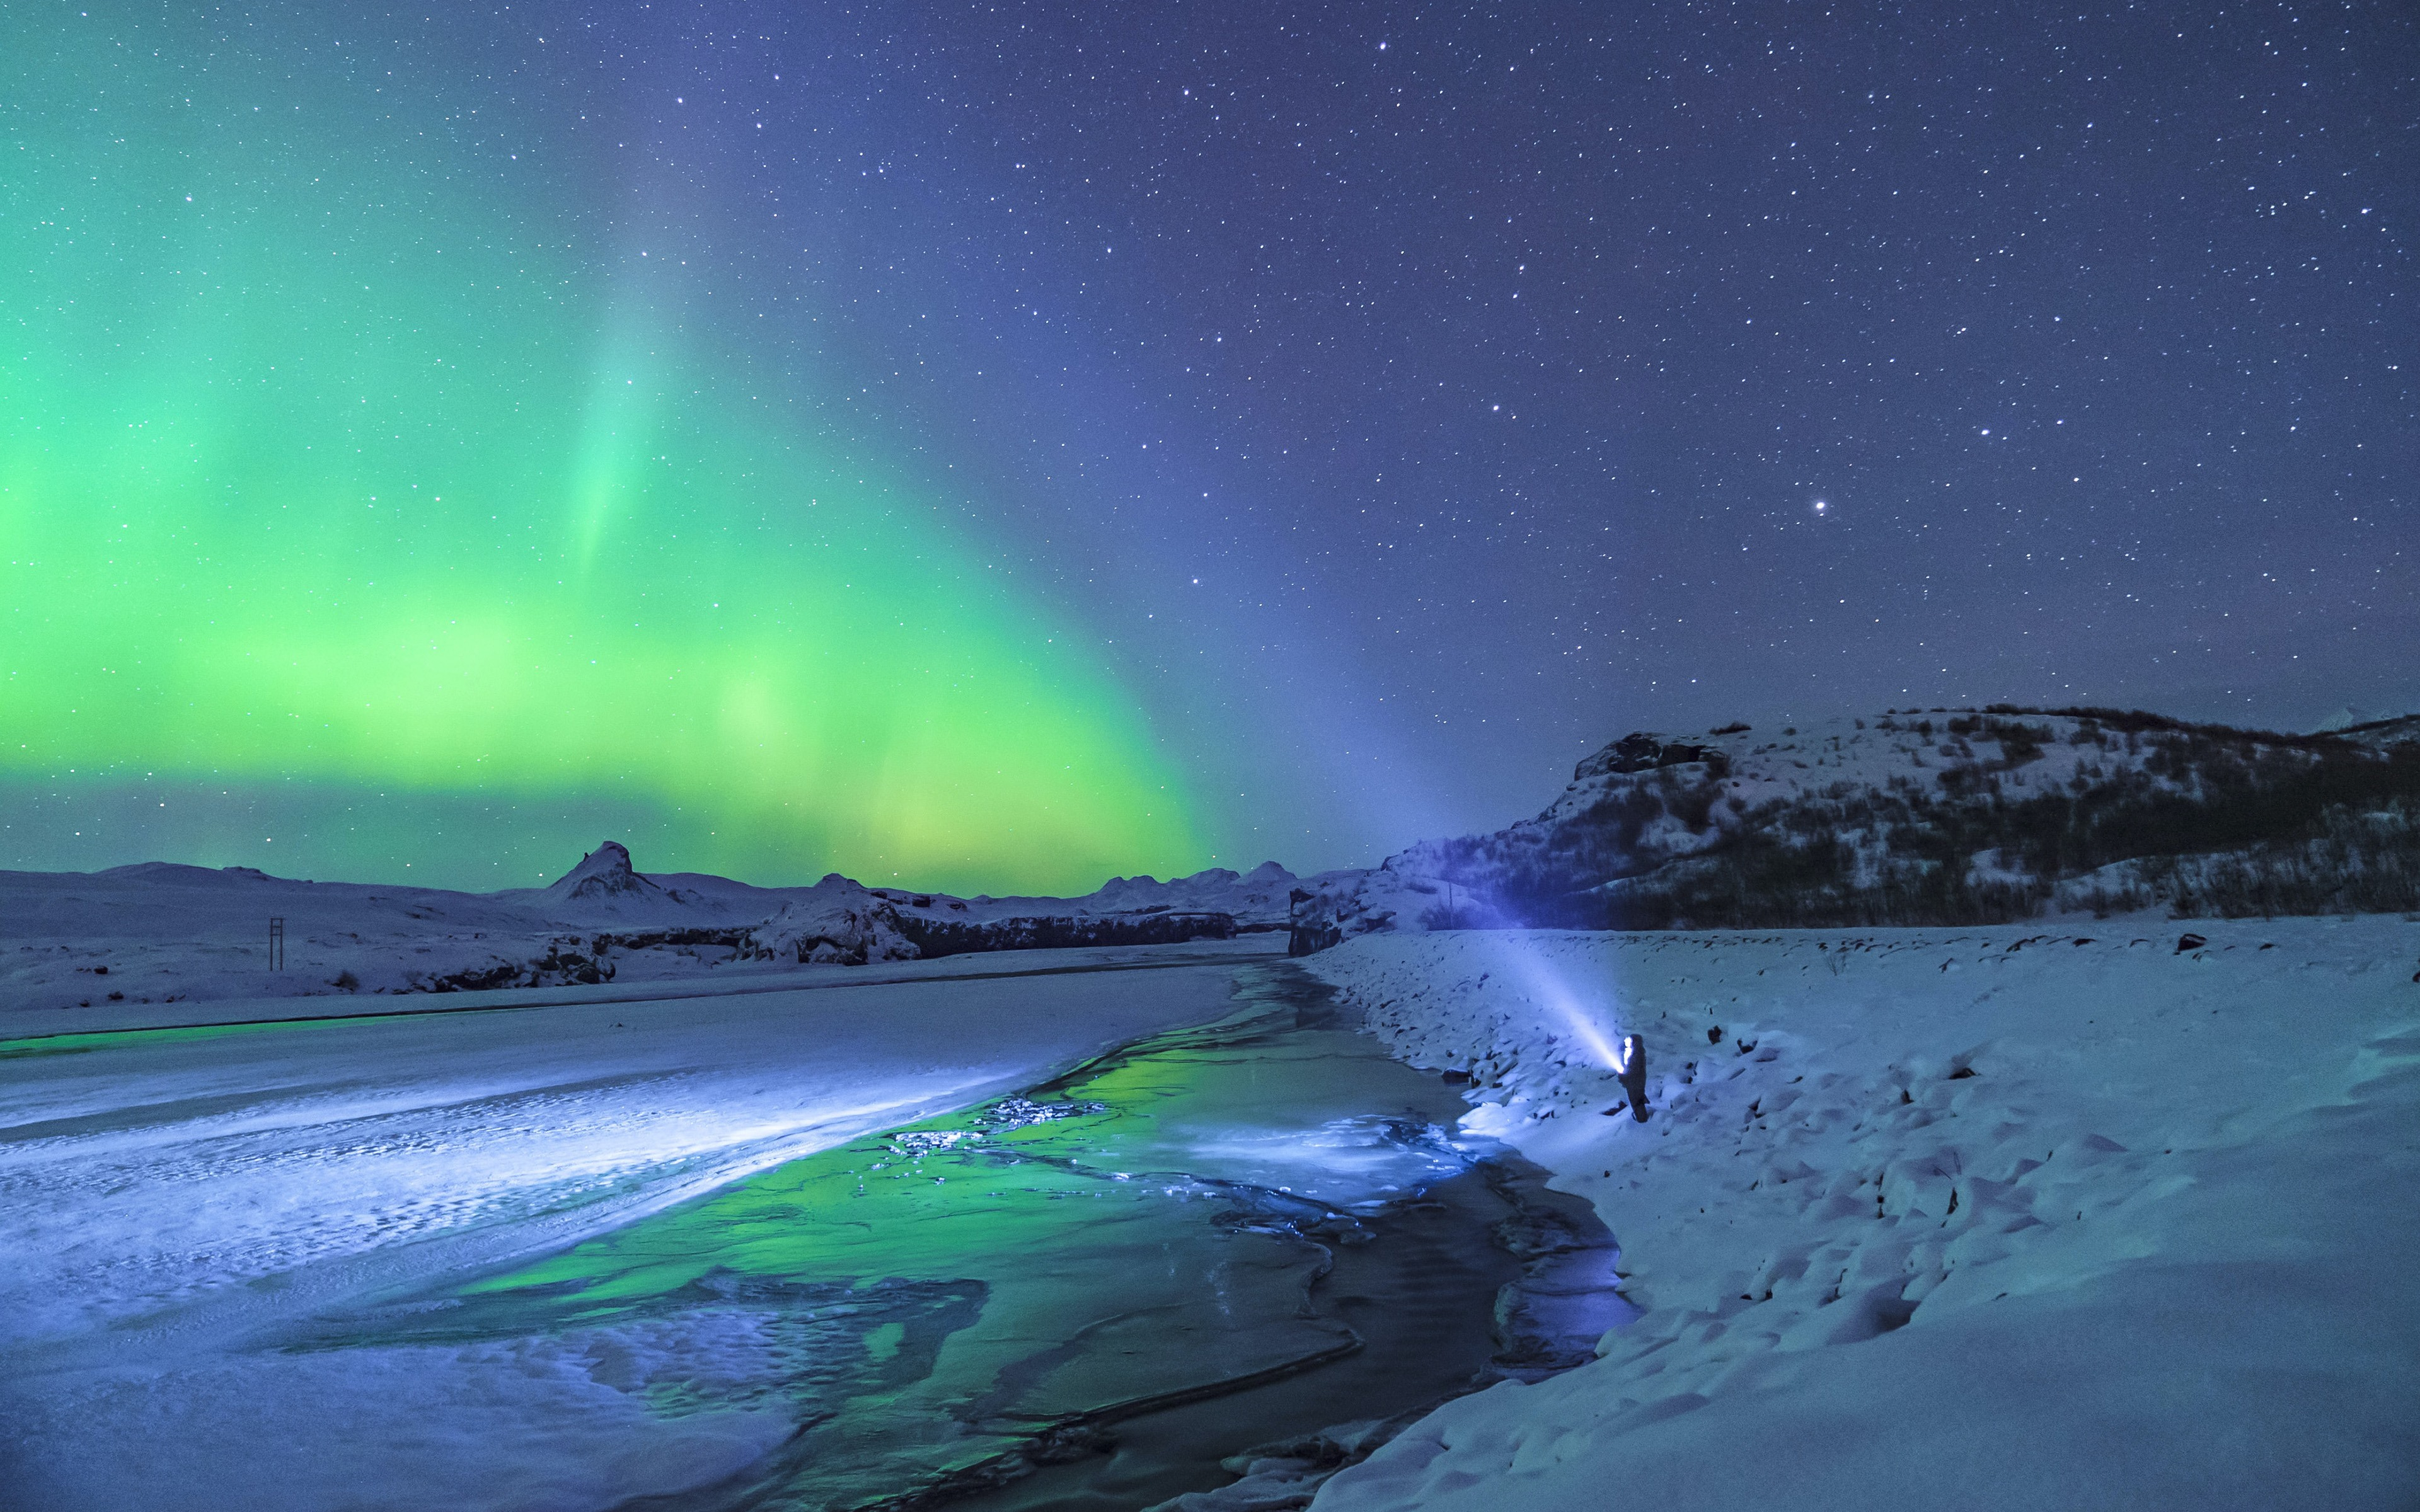 Бесплатное фото Мужчина включил мощный фонарь в ночное небо с северным сиянием